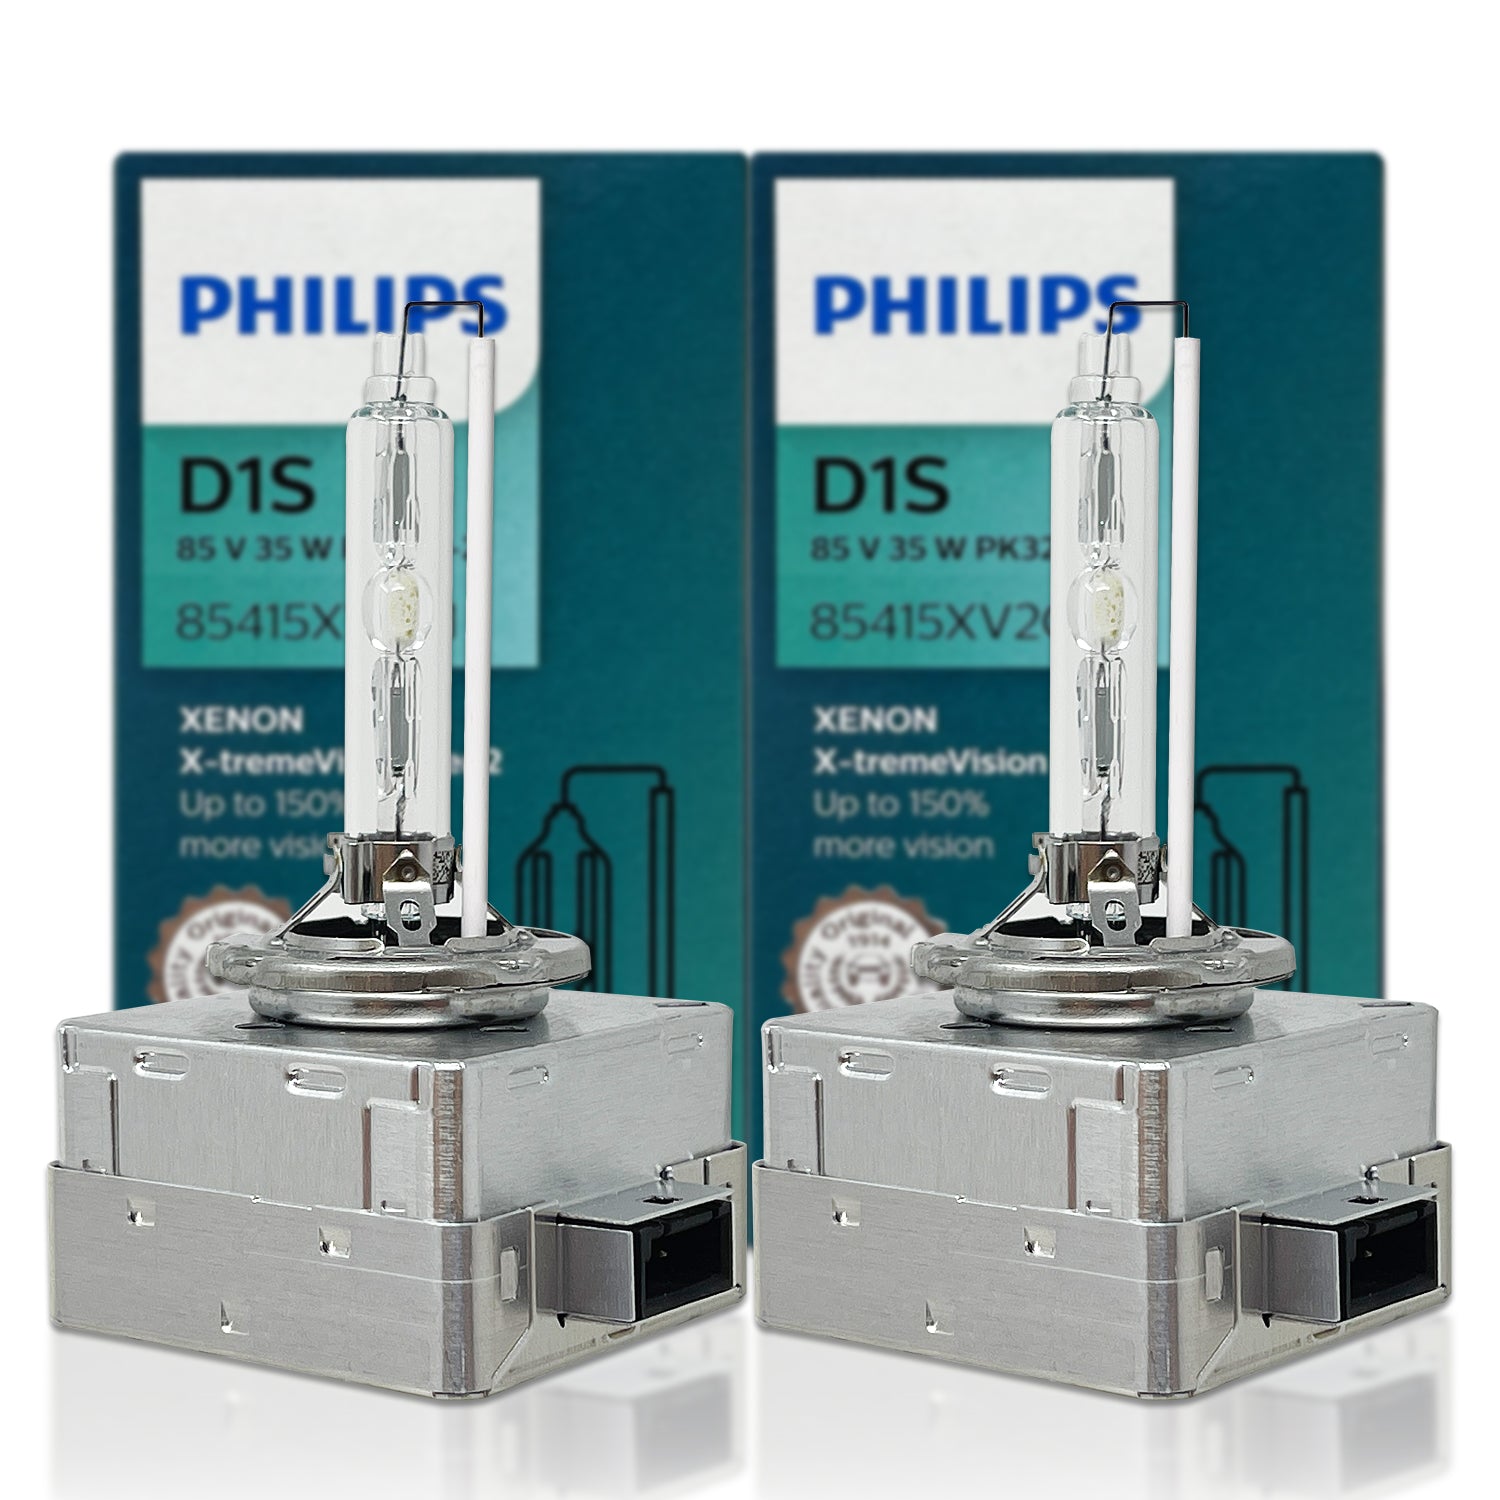 1x Ampoule D1S 85V 35W Vision Philips 85415VIS1 type XenStart 9285